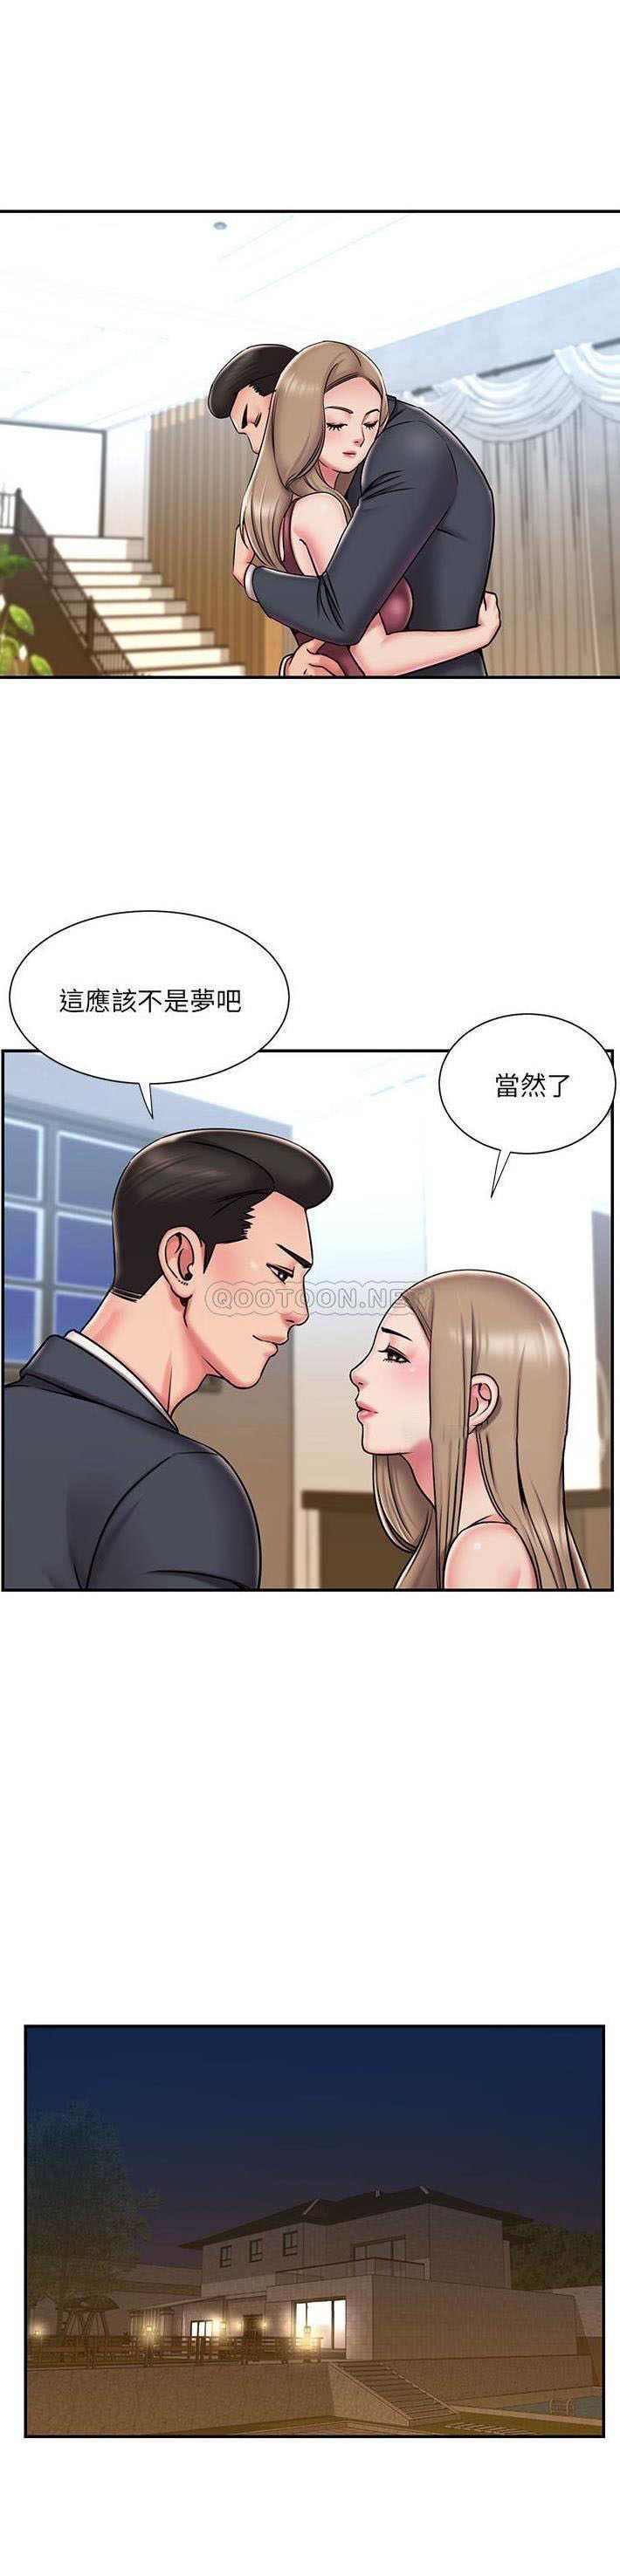 韩国污漫画 被拋棄的男人(男孩沒人愛) 第43话 12